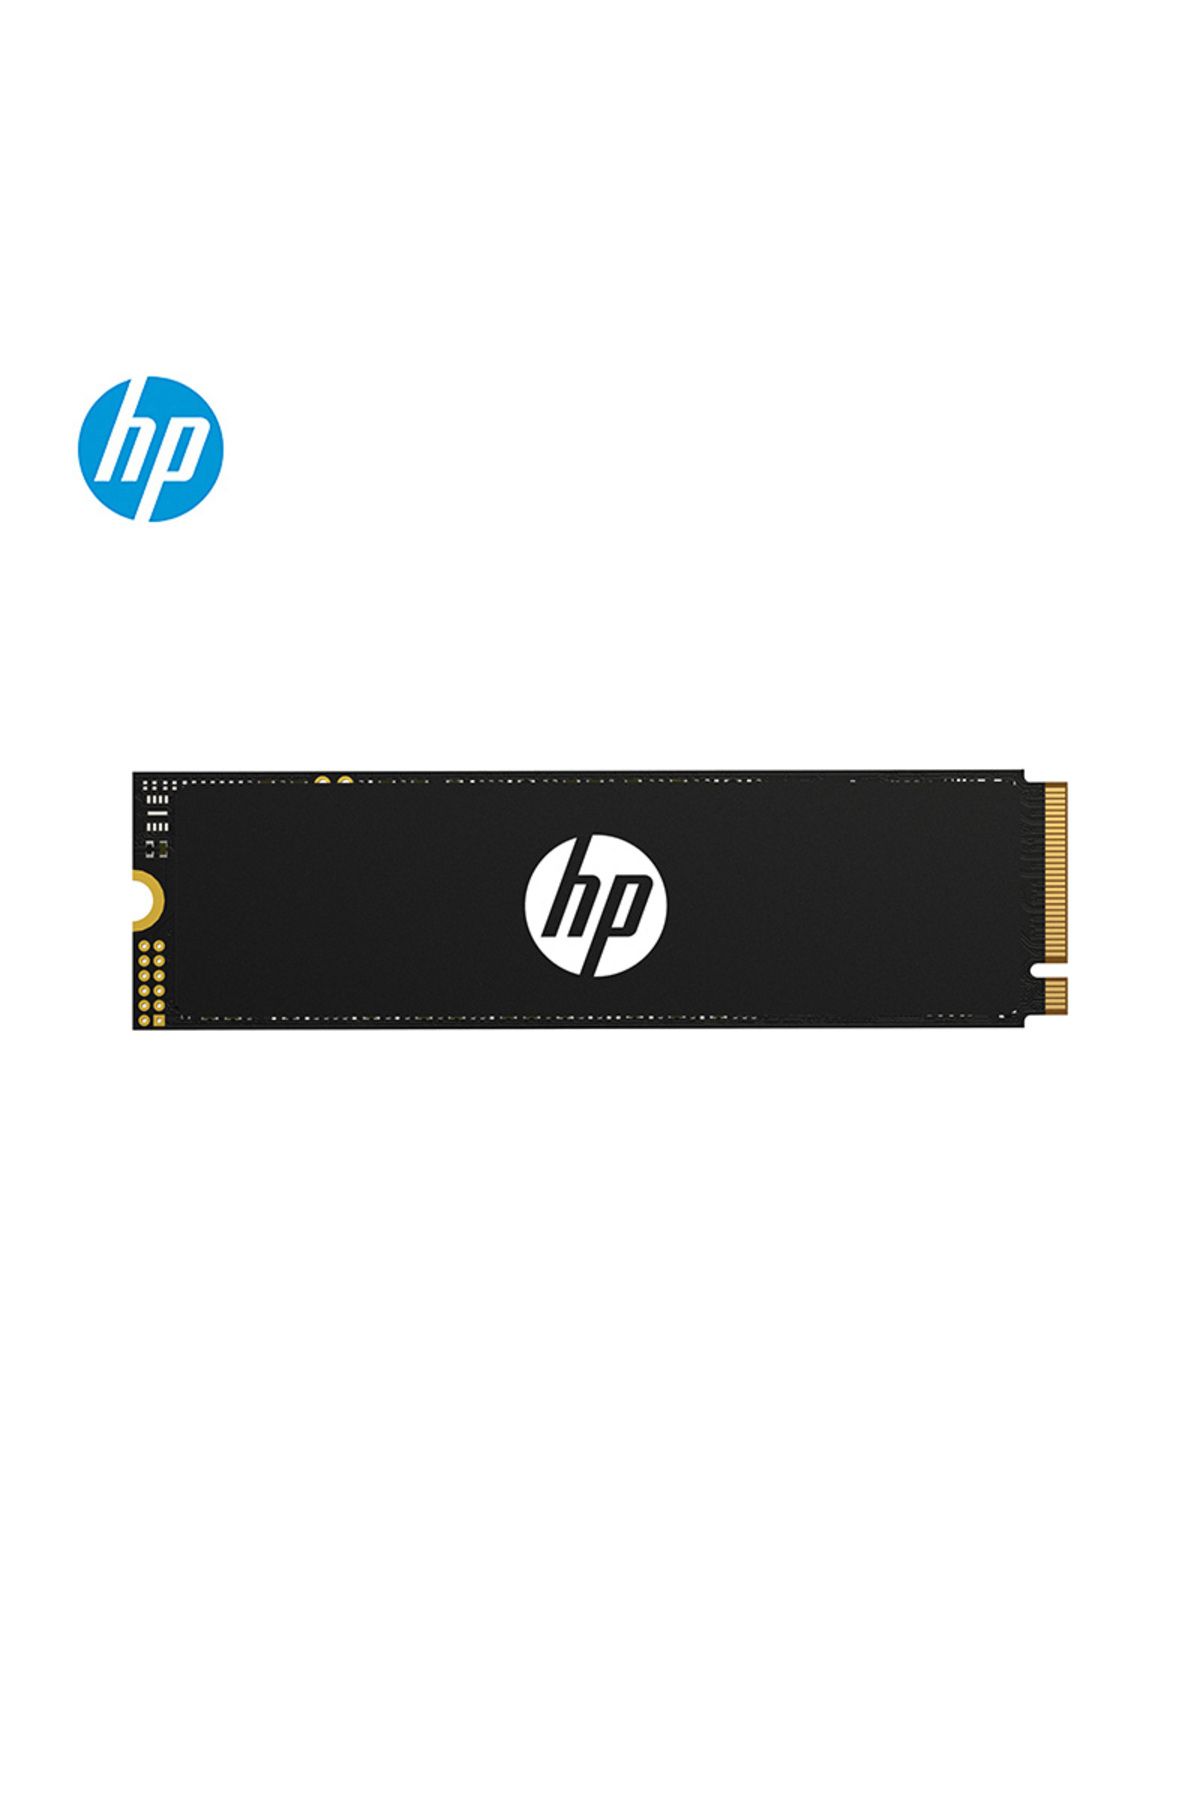 HP SSD FX700 1TB M.2 SSD